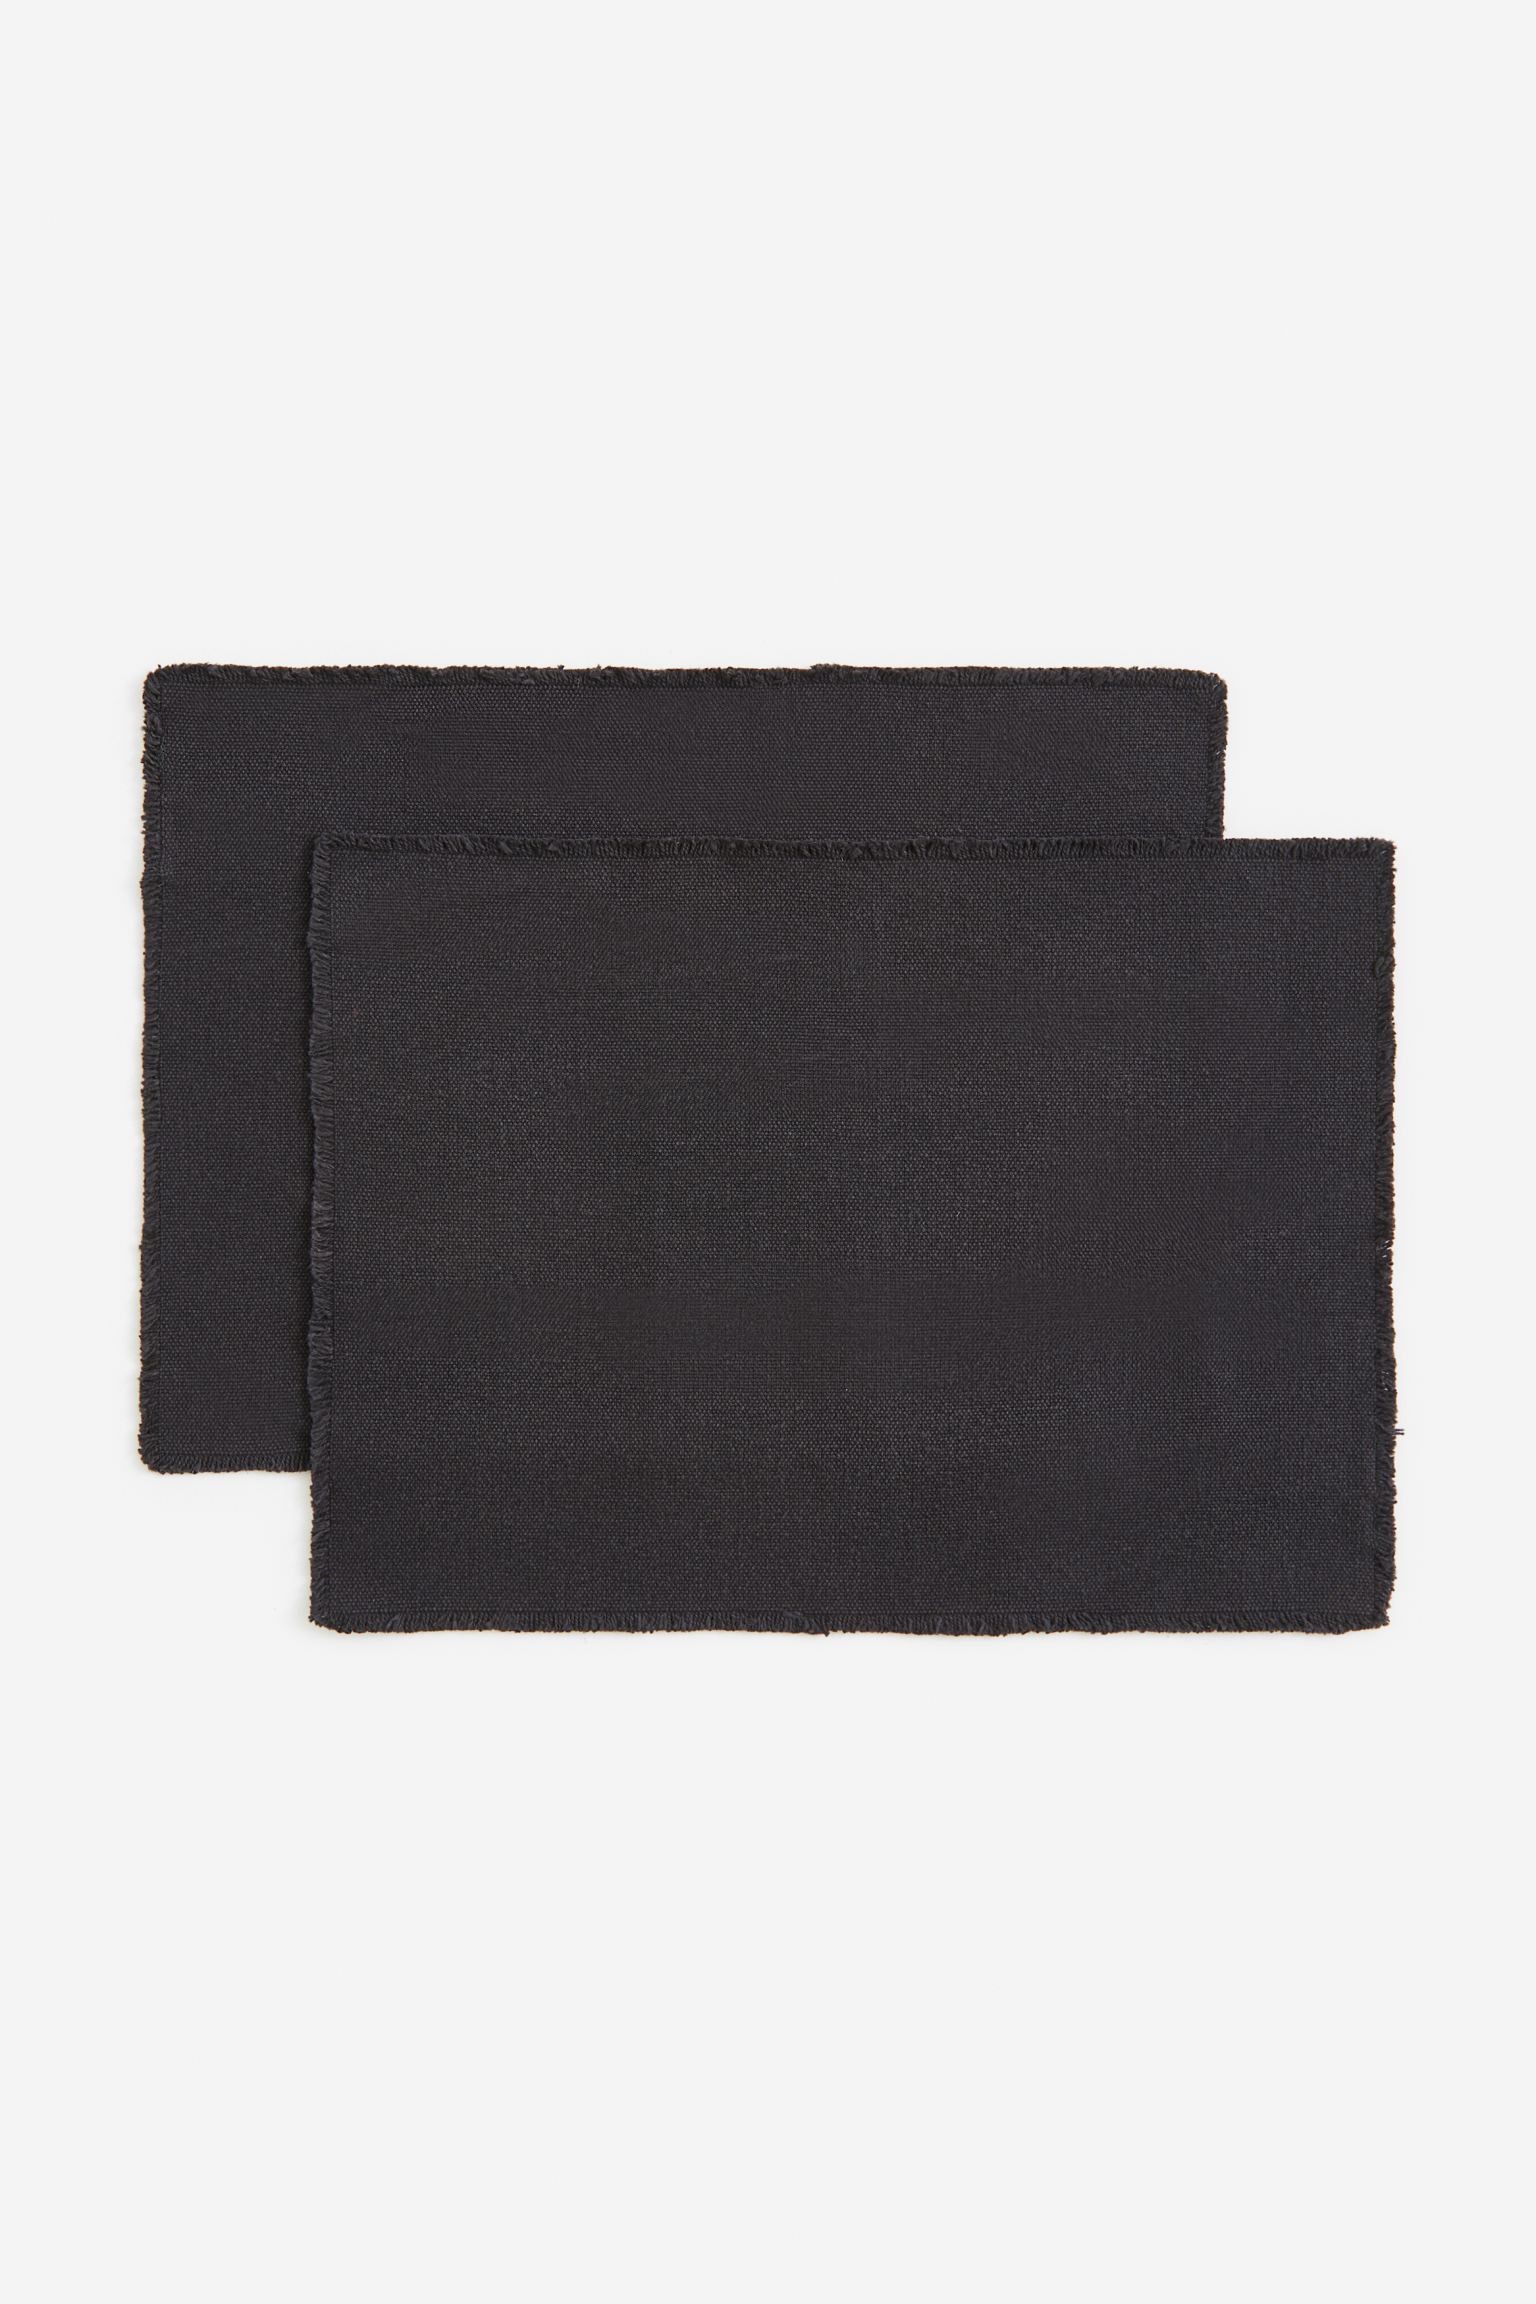 H&M Home Полотняна серветка під прибори, темно-сірий, 35x48 1168936003 | 1168936003